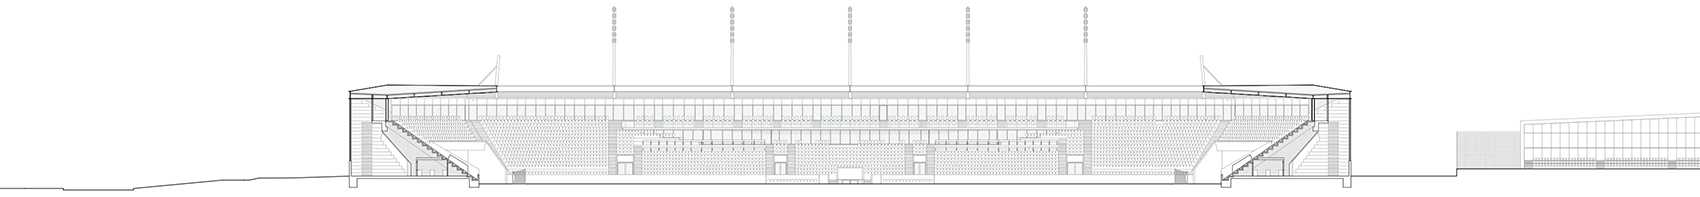 洛桑市新足球场馆，瑞士/散发宁静感的市郊体育设施-60